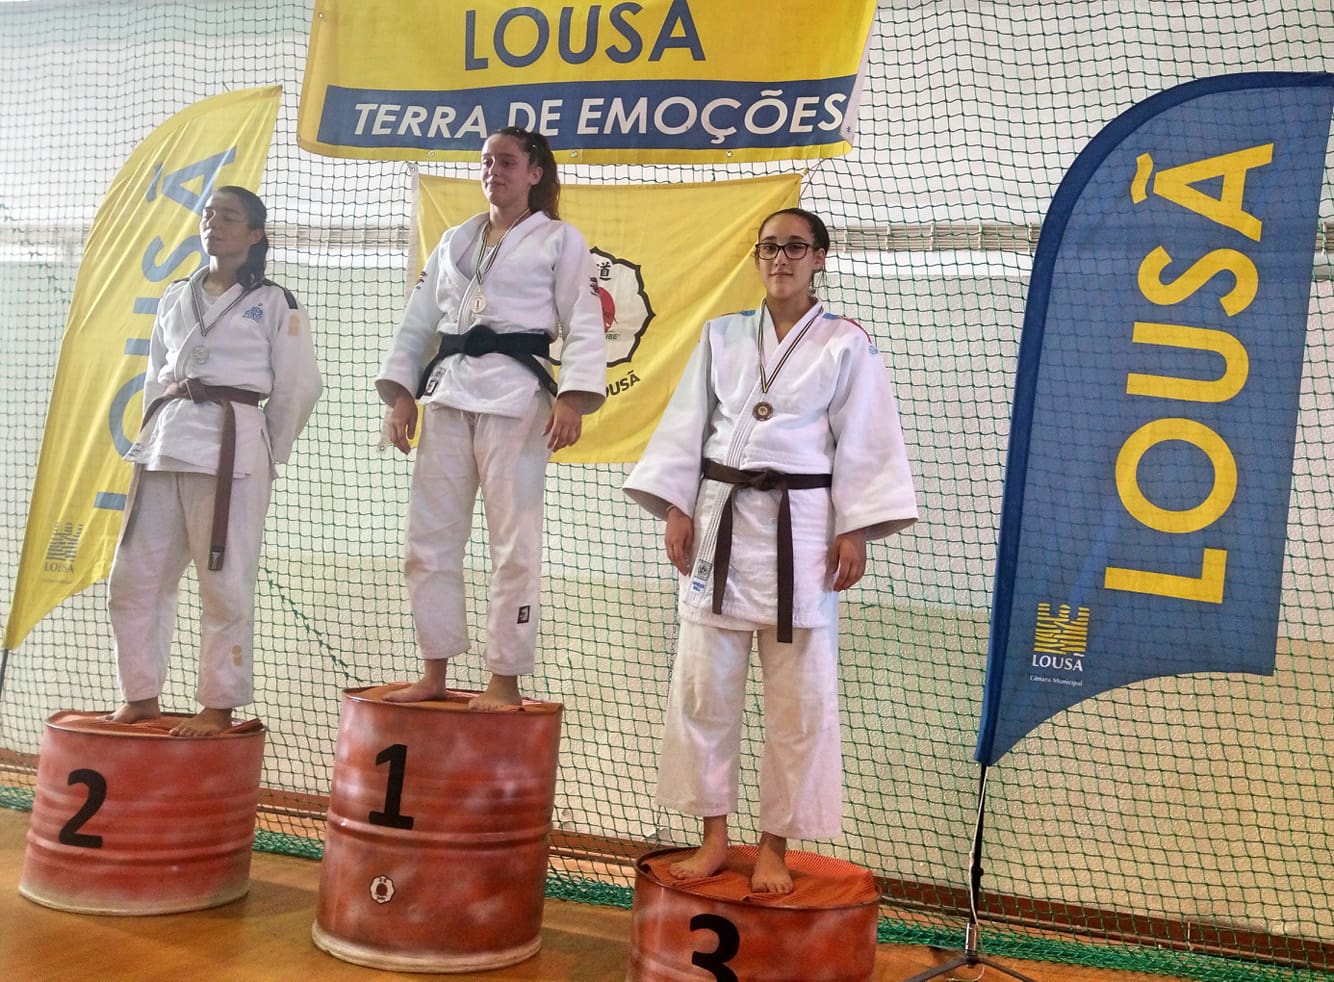 Castelo Branco: Judocas da Academia conquistam medalhas na Lousã